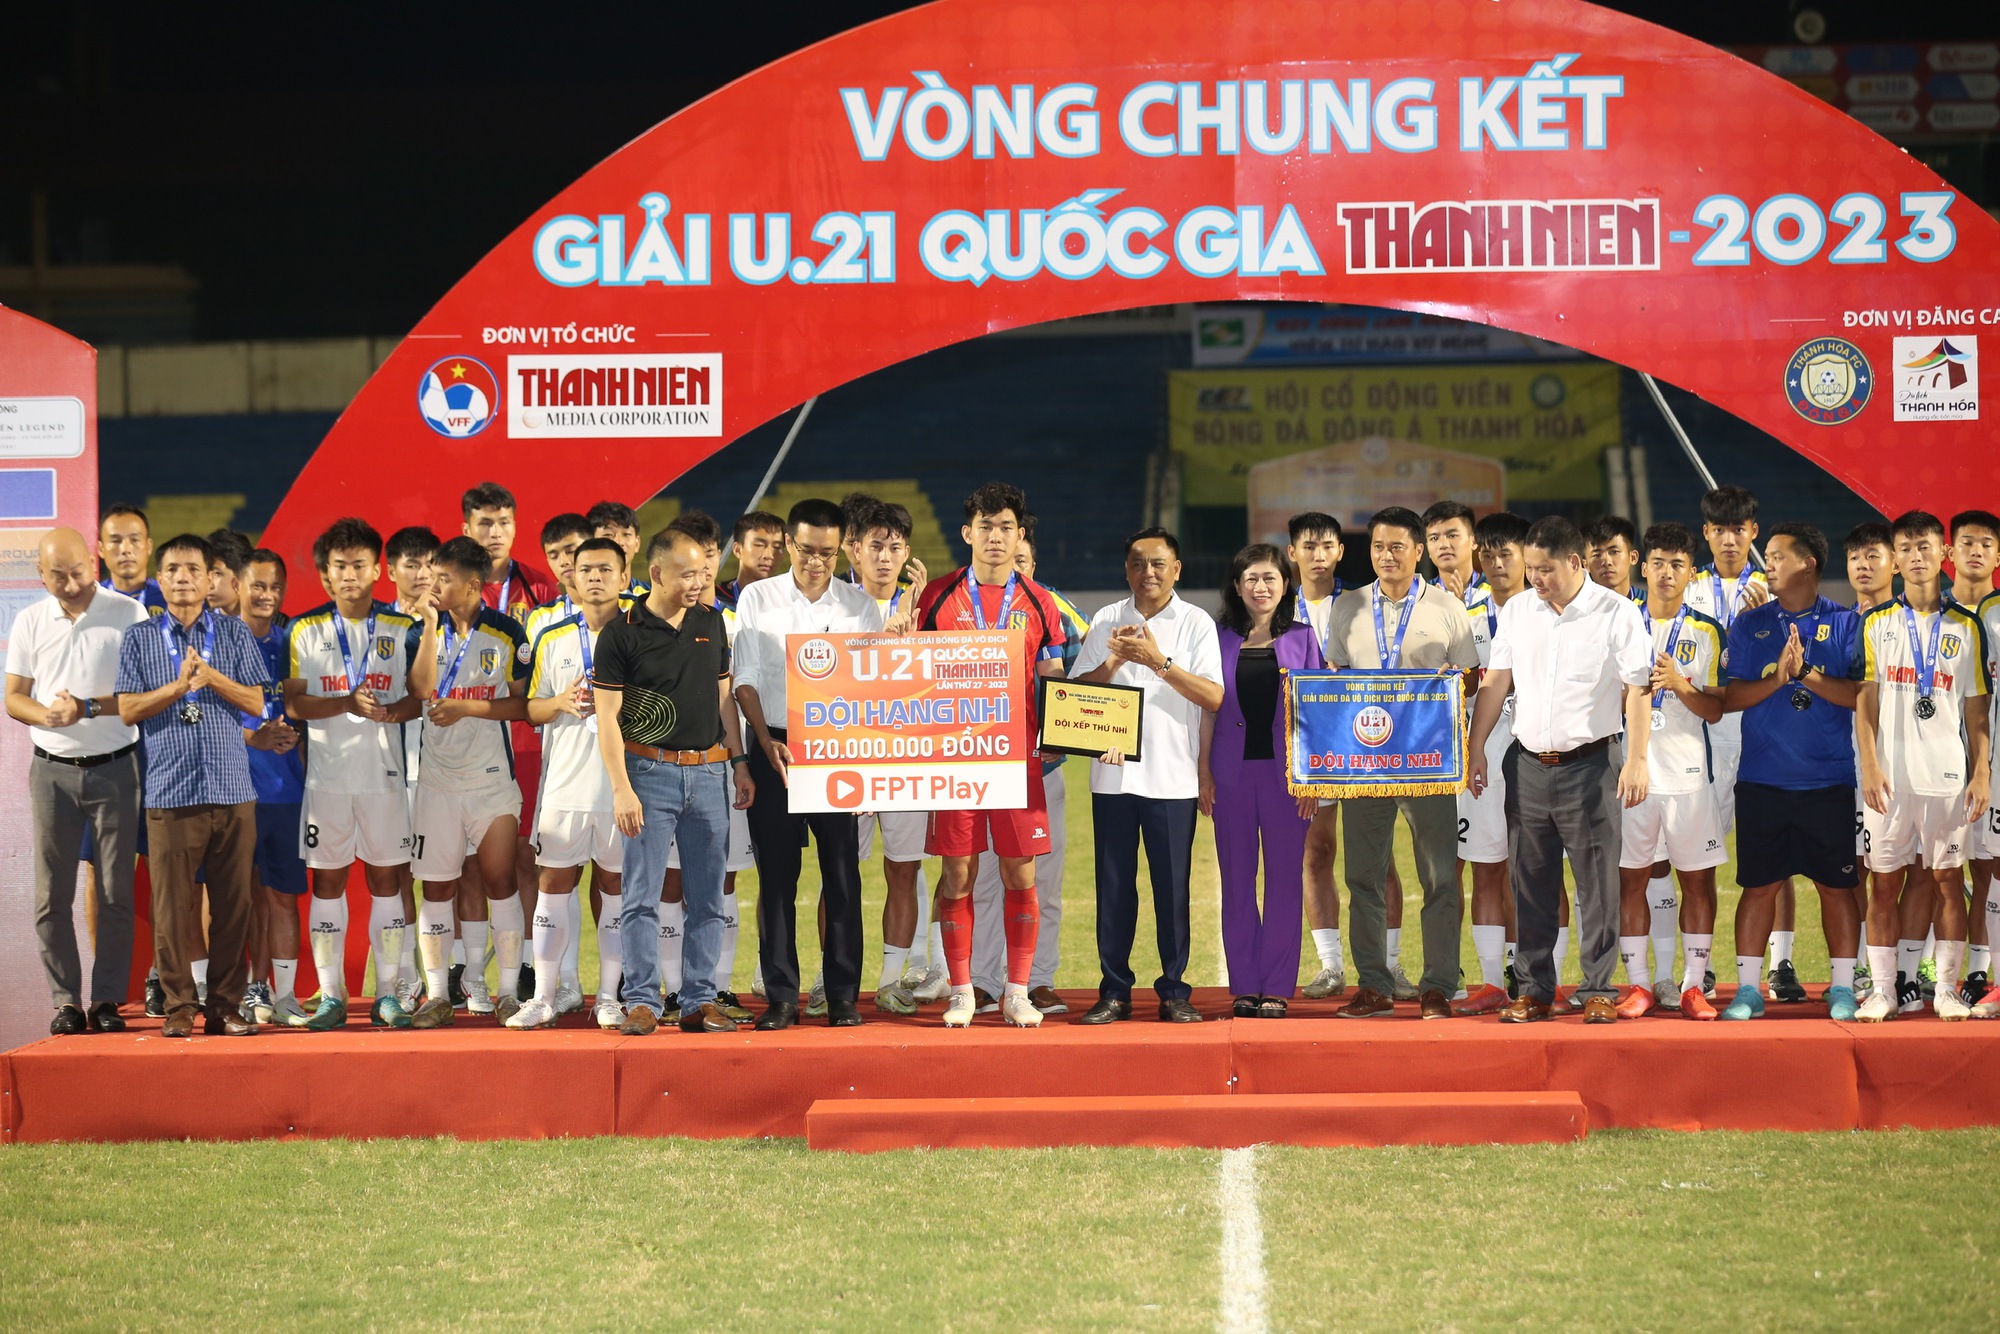 Sao mai U.23 Việt Nam xuất sắc nhất, PVF-CAND lần đầu vô địch giải U.21 - Ảnh 4.